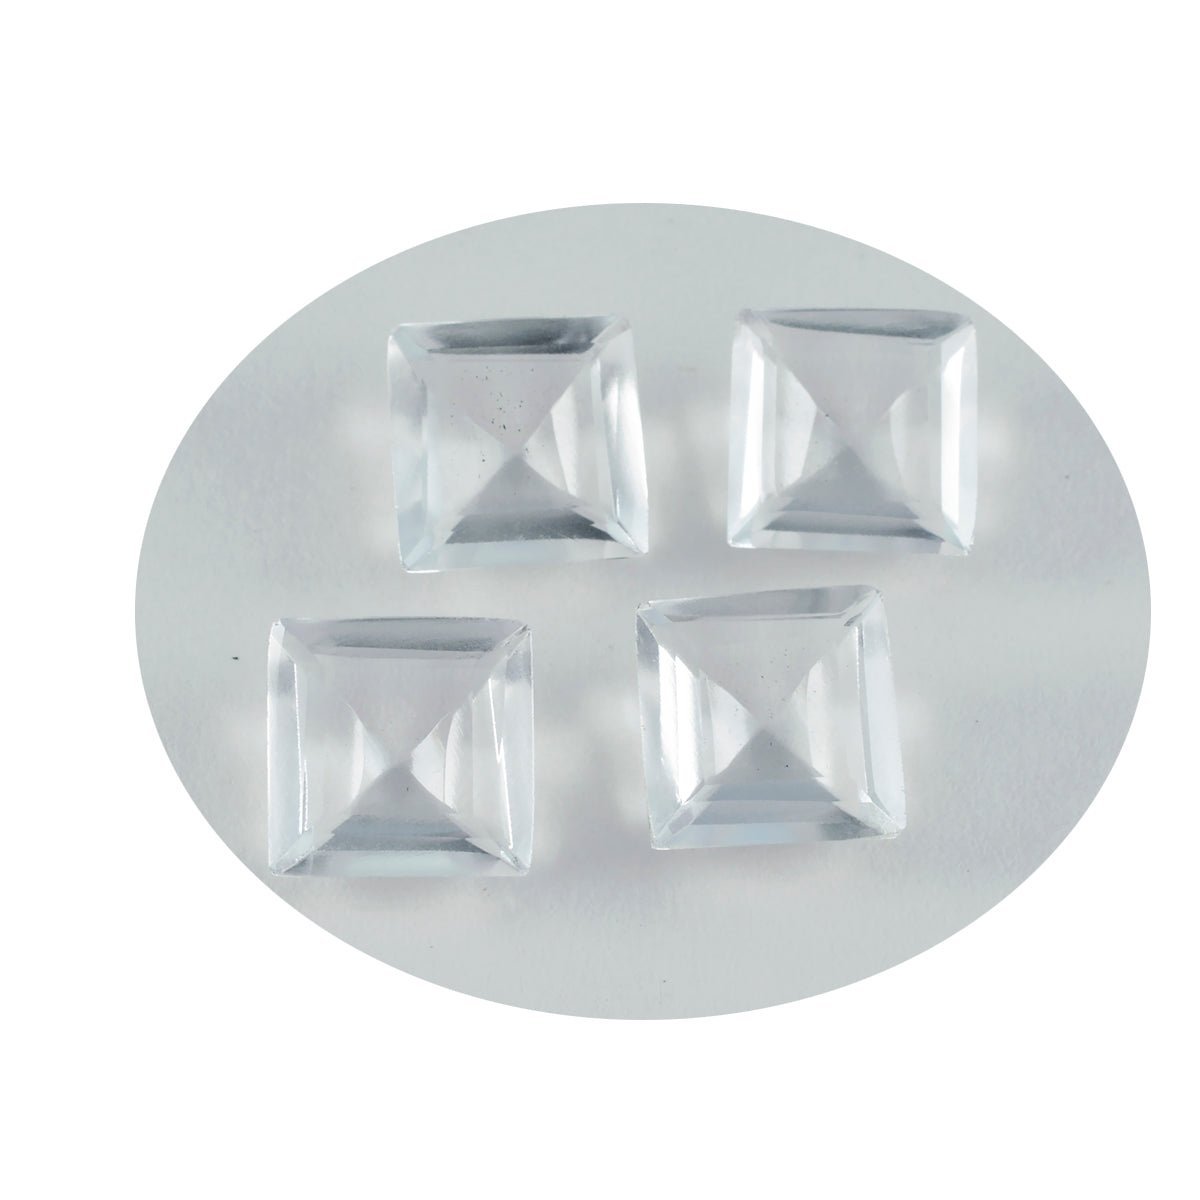 riyogems 1pc ホワイト クリスタル クォーツ ファセット 13x13 mm 正方形の形状のハンサムな品質のルース宝石